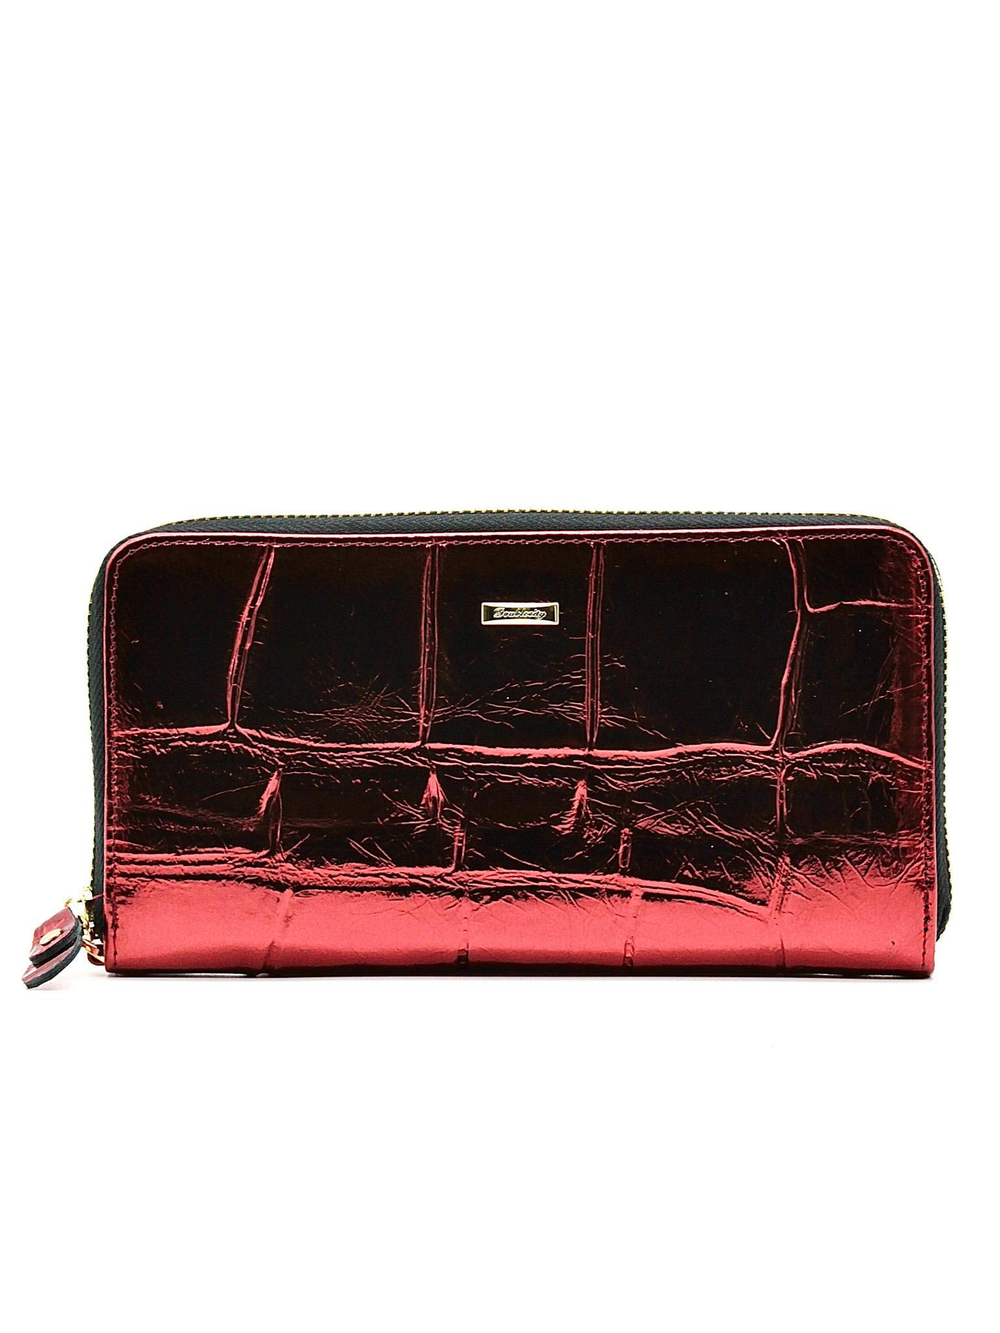 Фото стильный красивый красный лаковый женский большой кошелёк клатч 19х10 см из натуральной кожи Dublecity DC230-26B в подарочной коробке